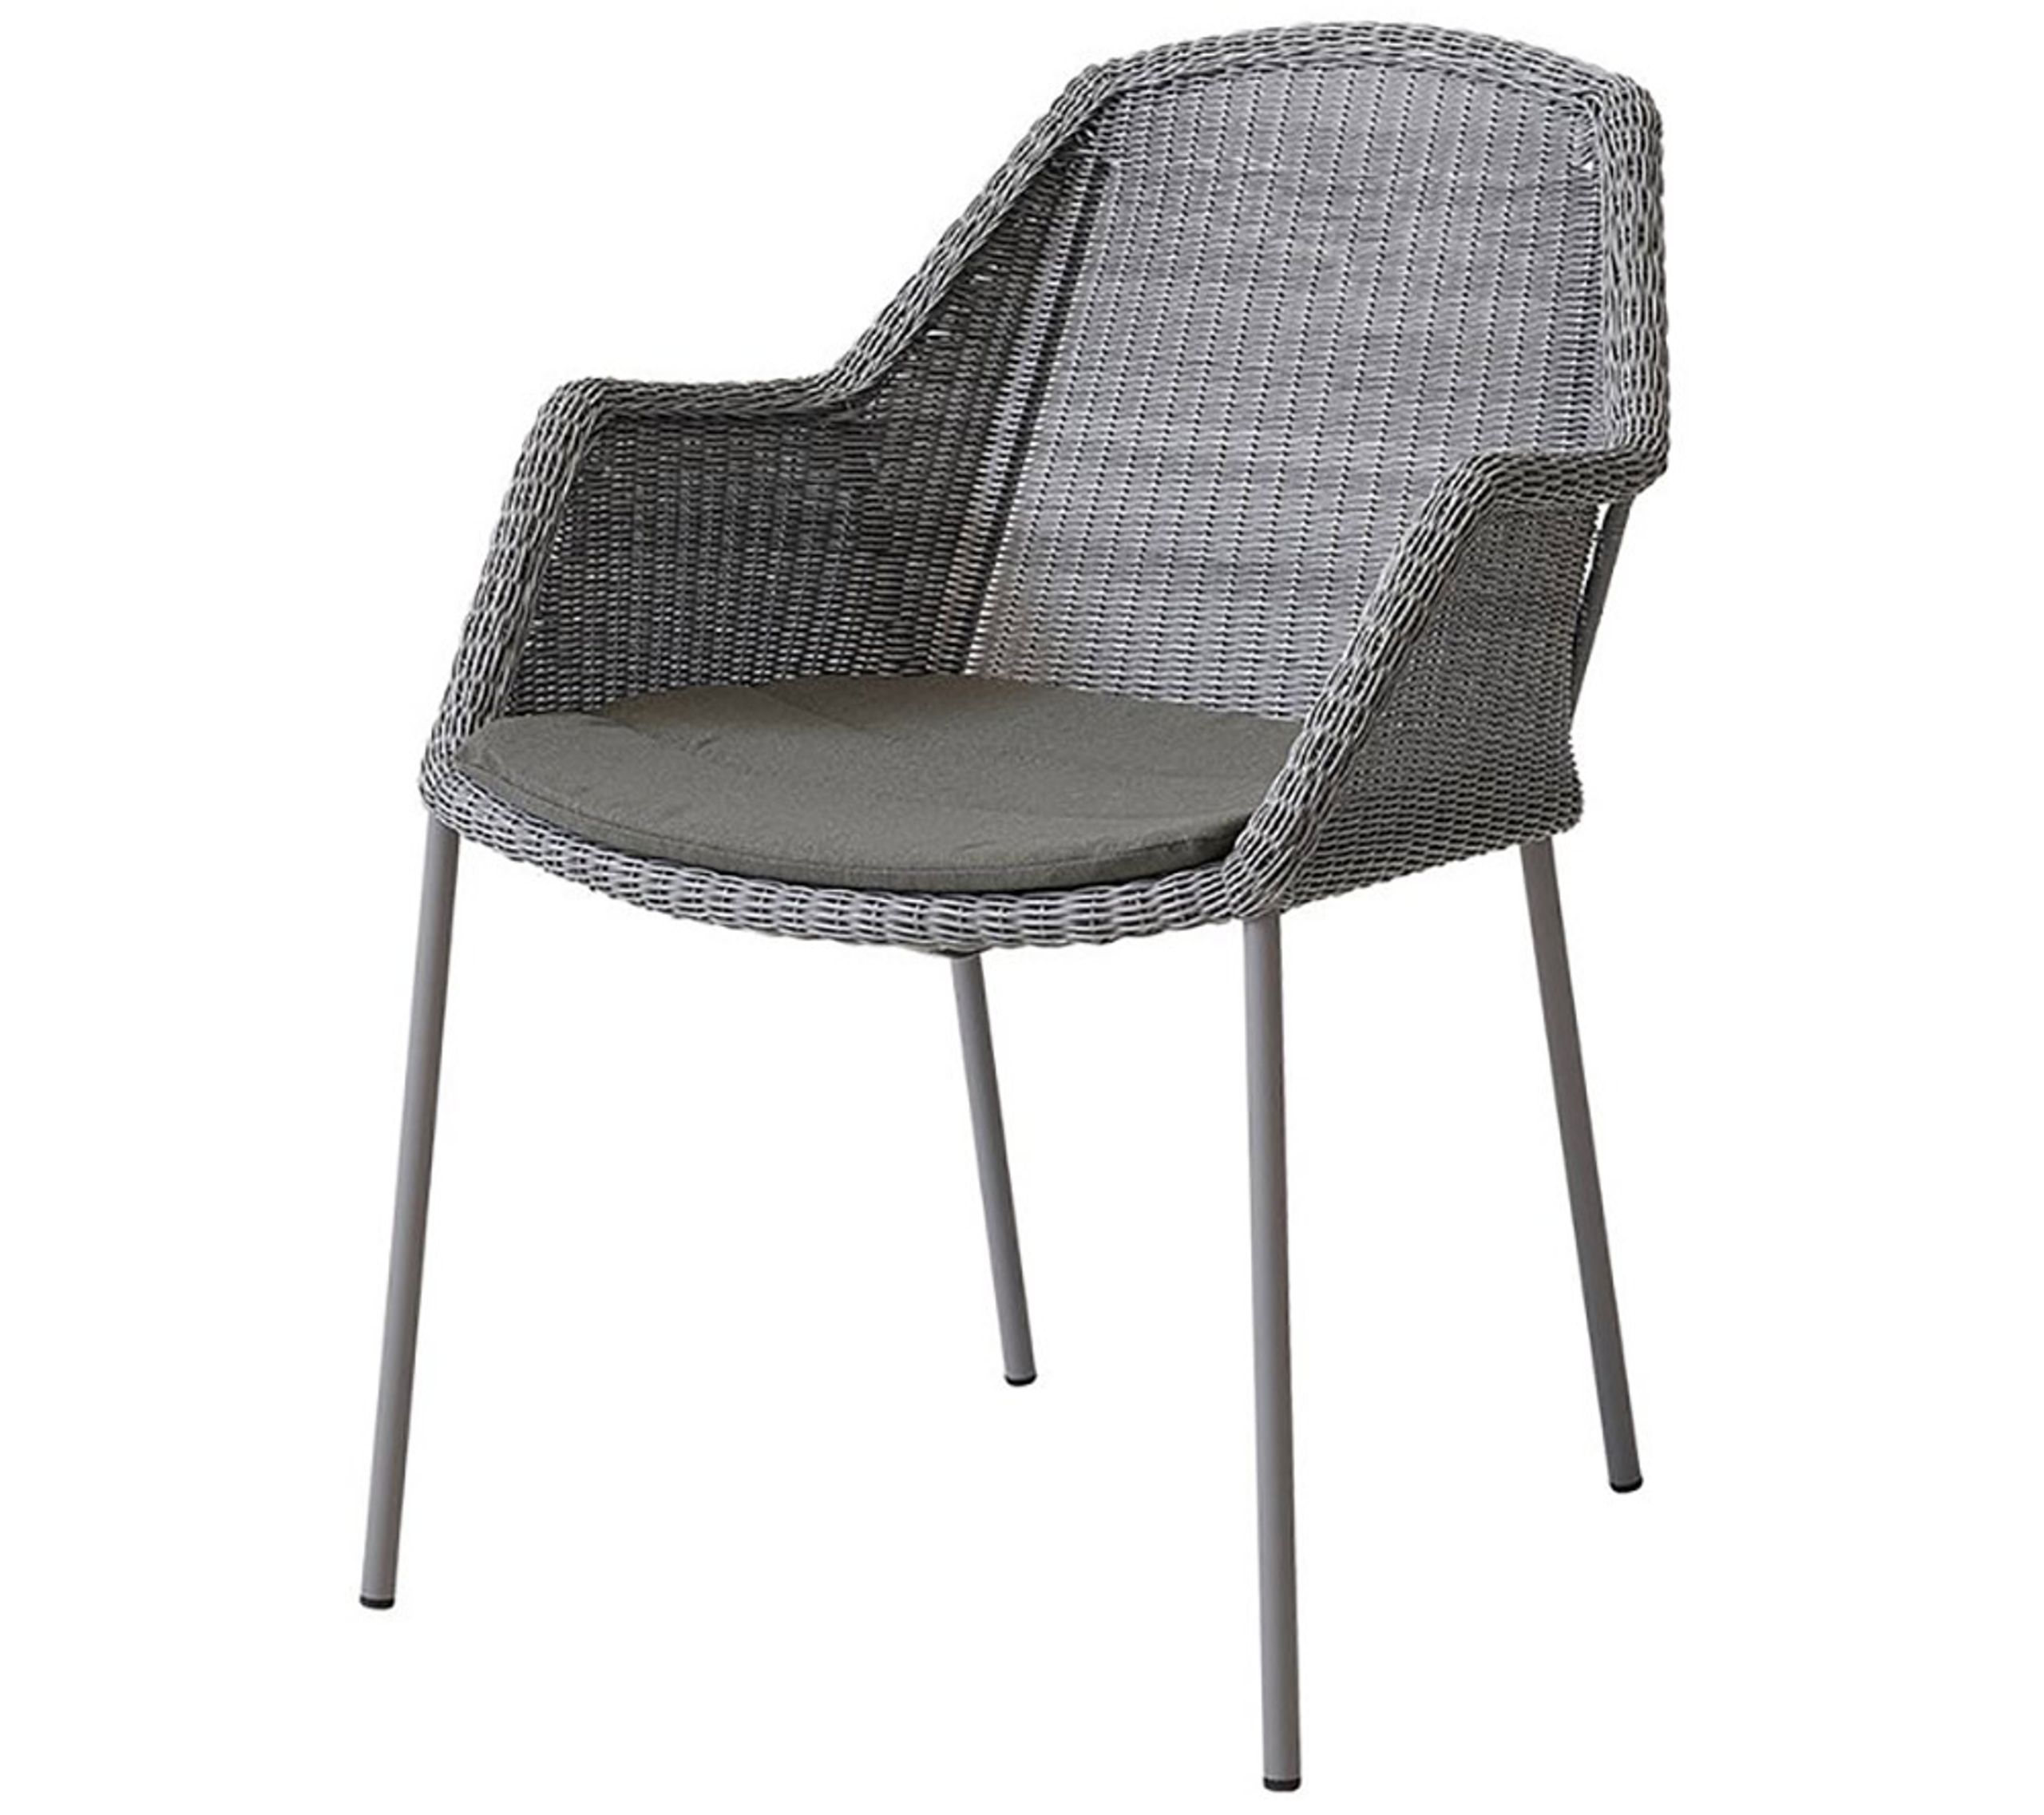 Cane-line - Coussin - Breeze Chair Cushion - Taupe - Cane-line Natté